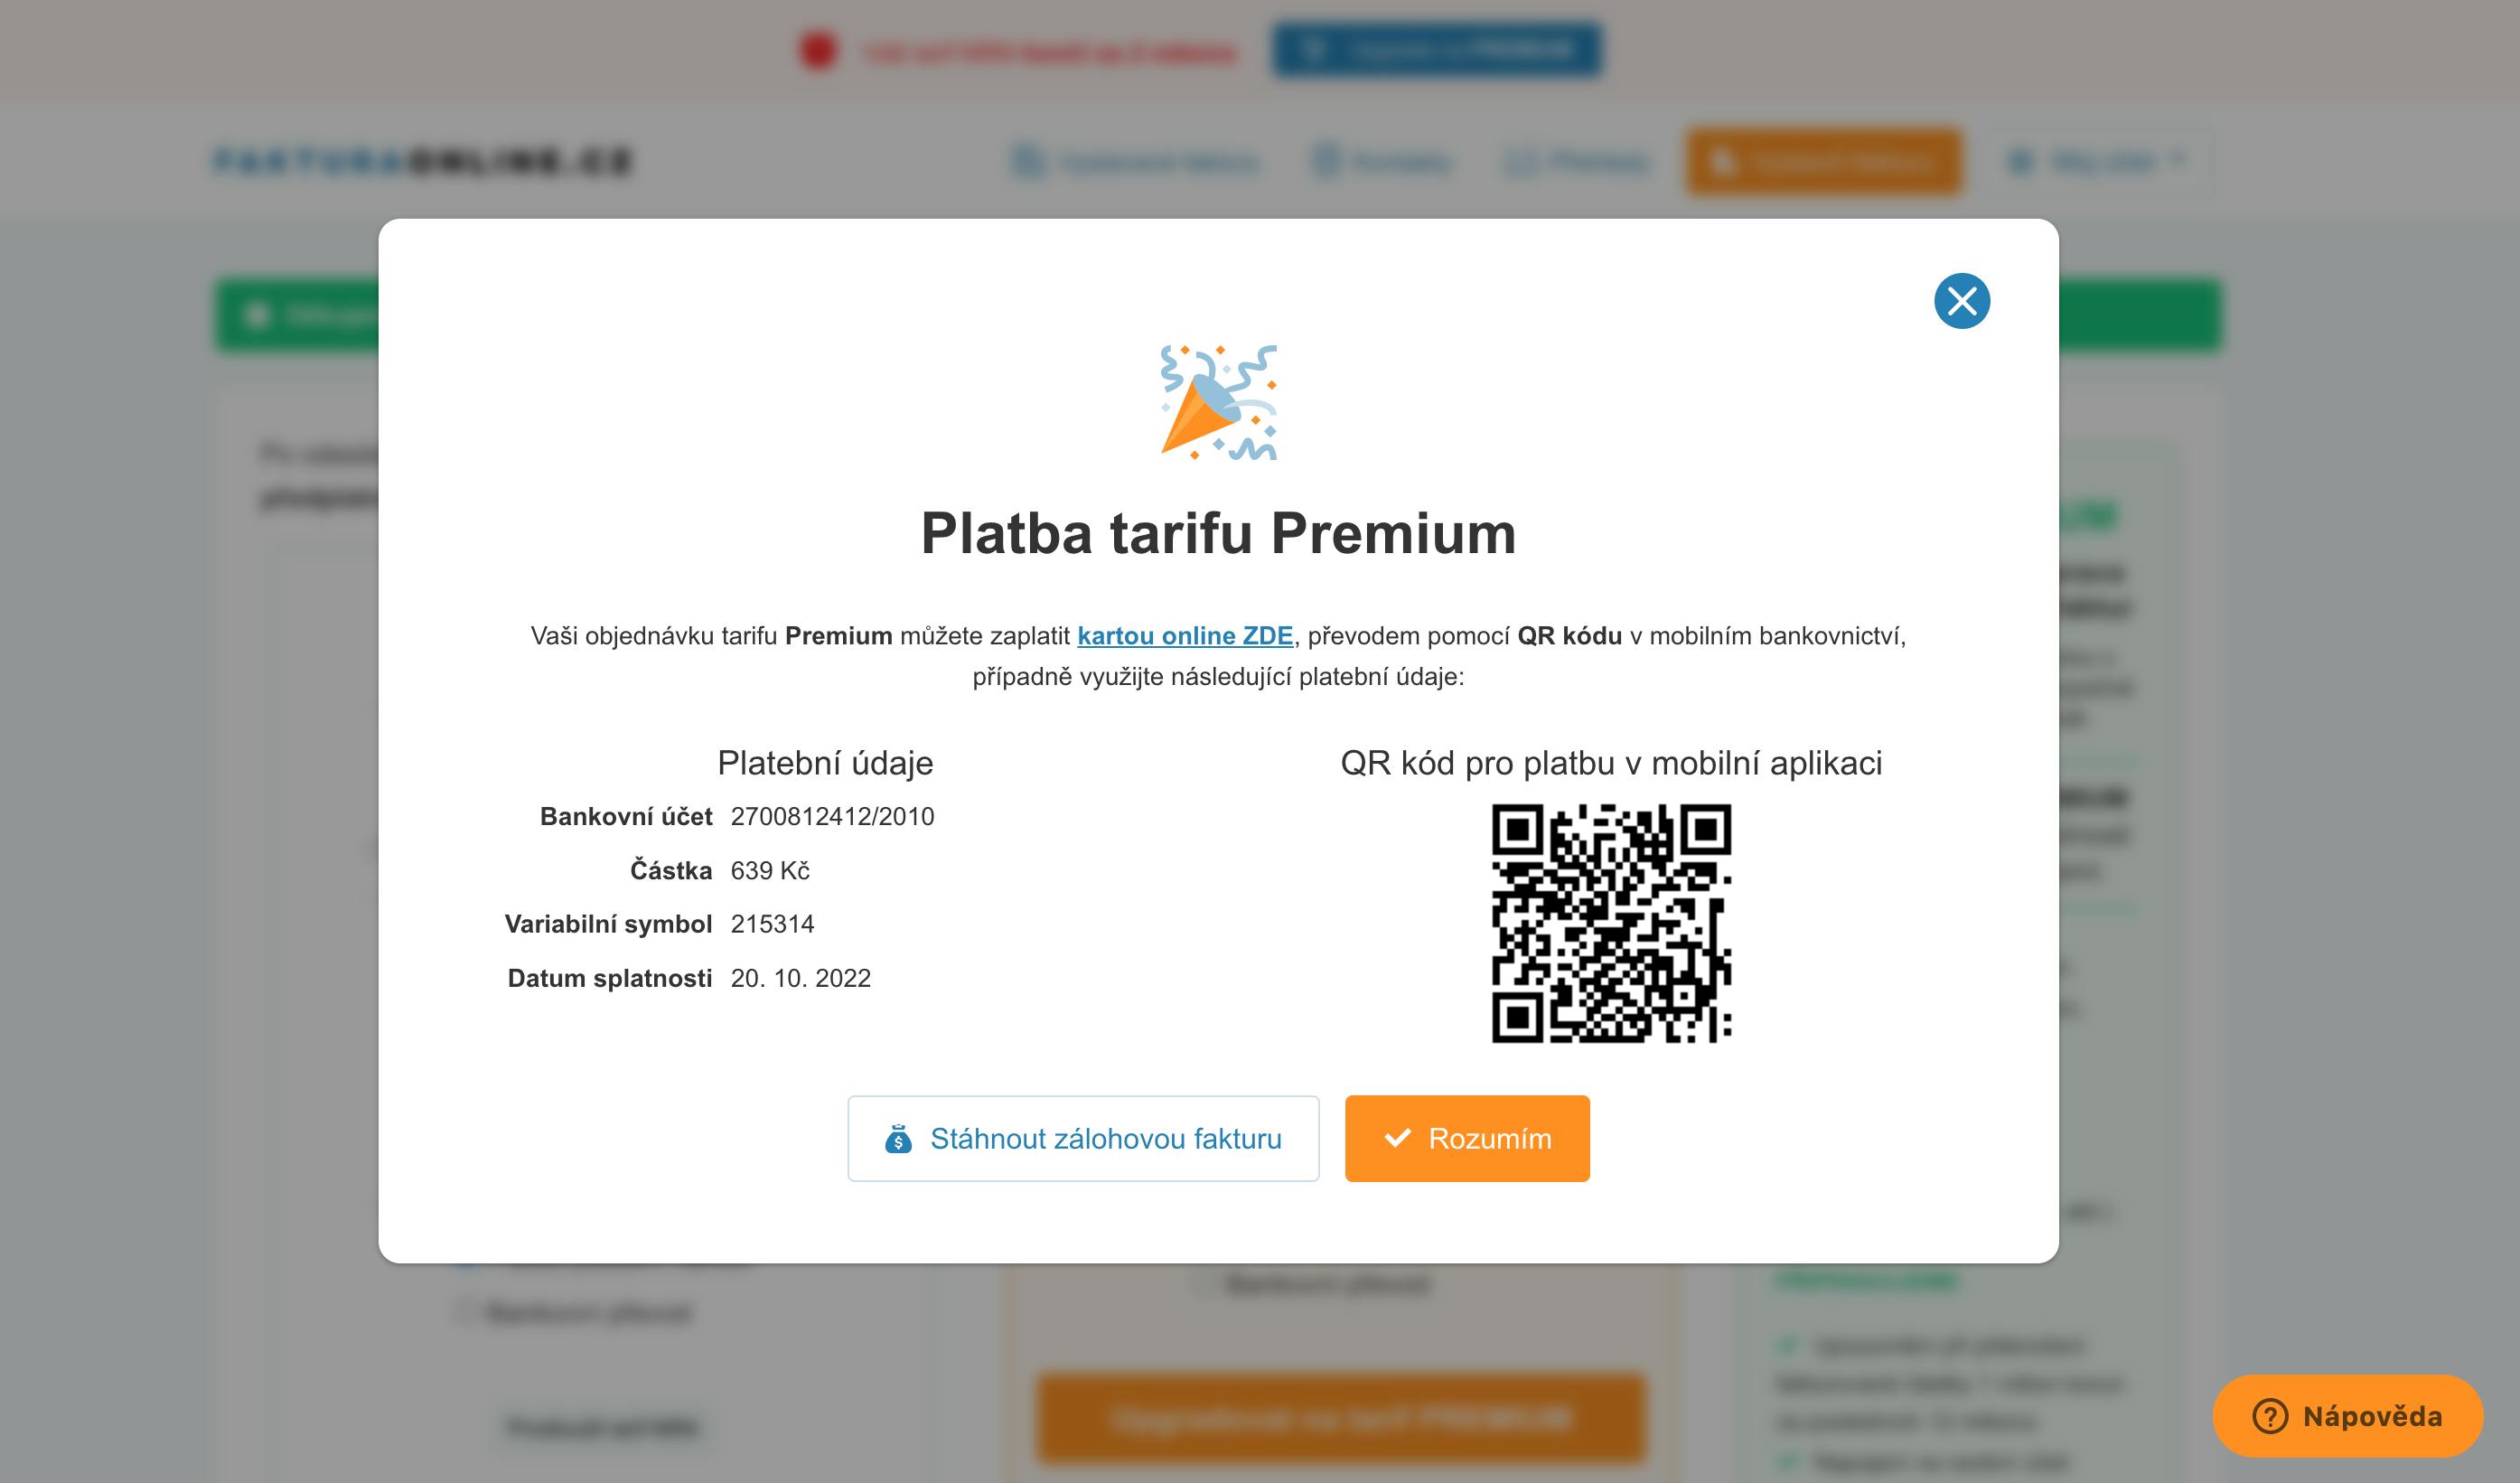 Platbu za tarify u FakturaOnline.cz můžete provést pomocí QR kodu nebo kartou. 